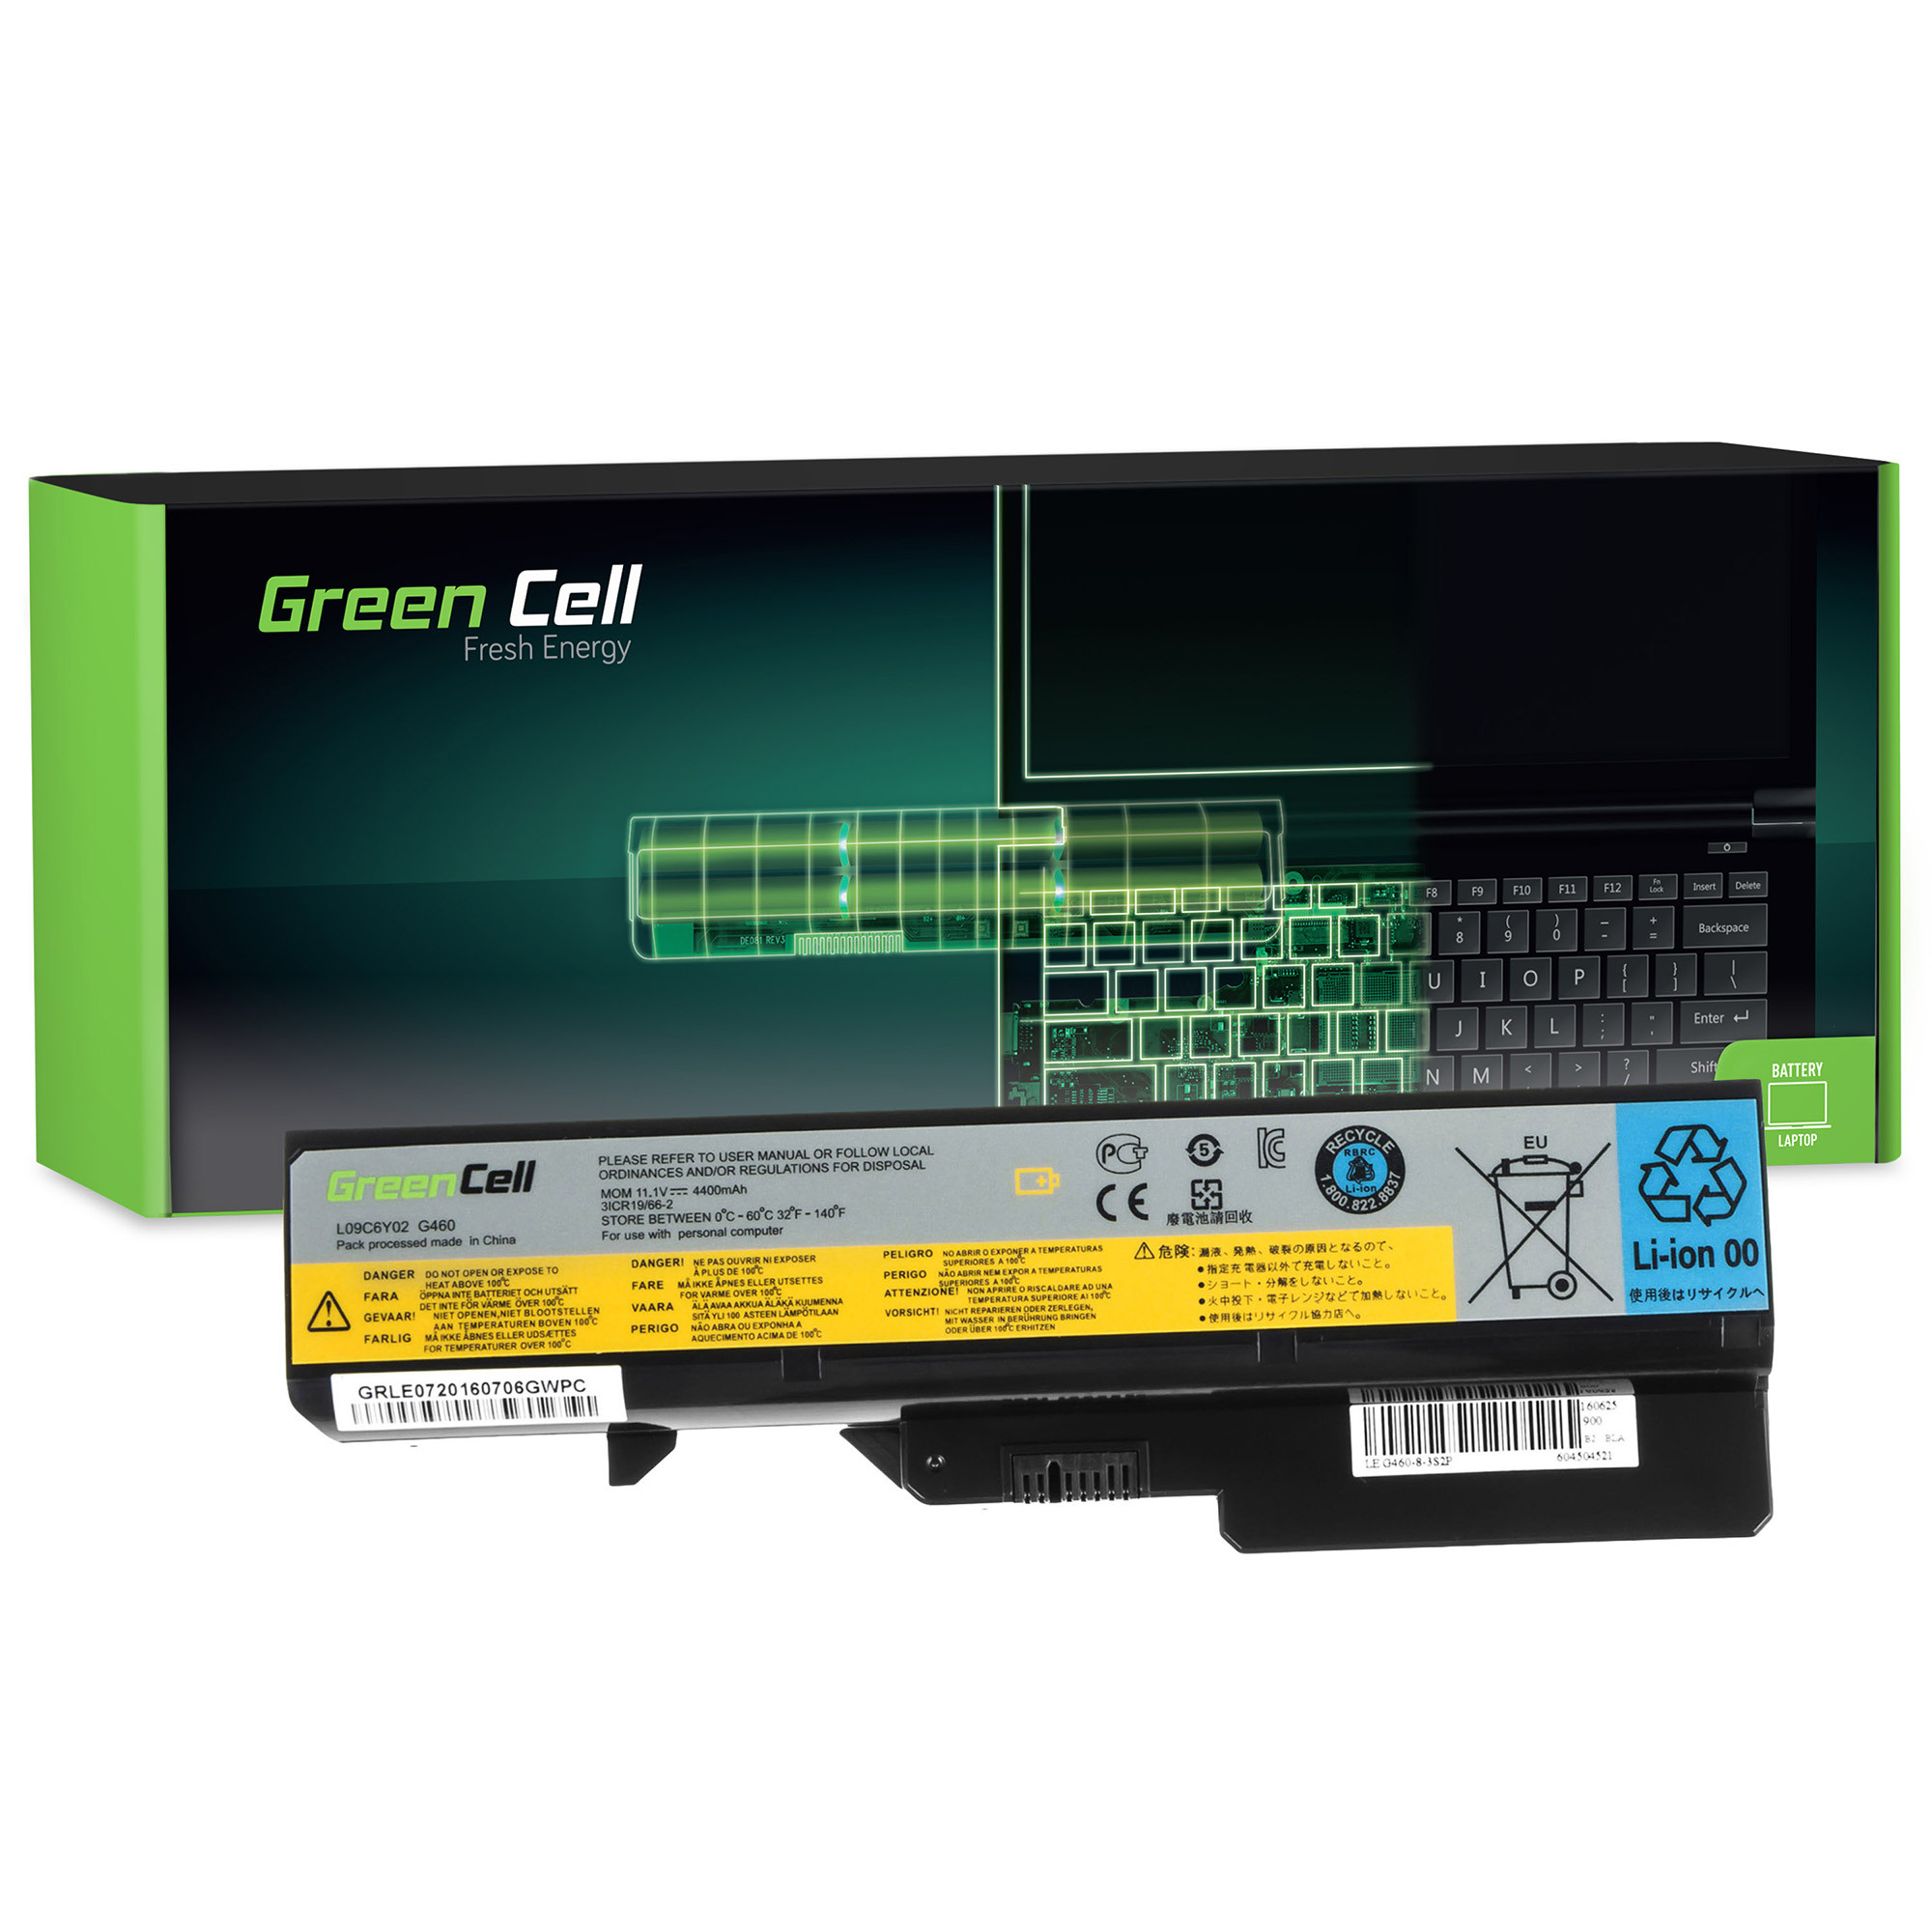 *Green Cell LE07 Baterie Lenovo IdeaPad G460 G560 G770 Z460 4400mAh Li-ion